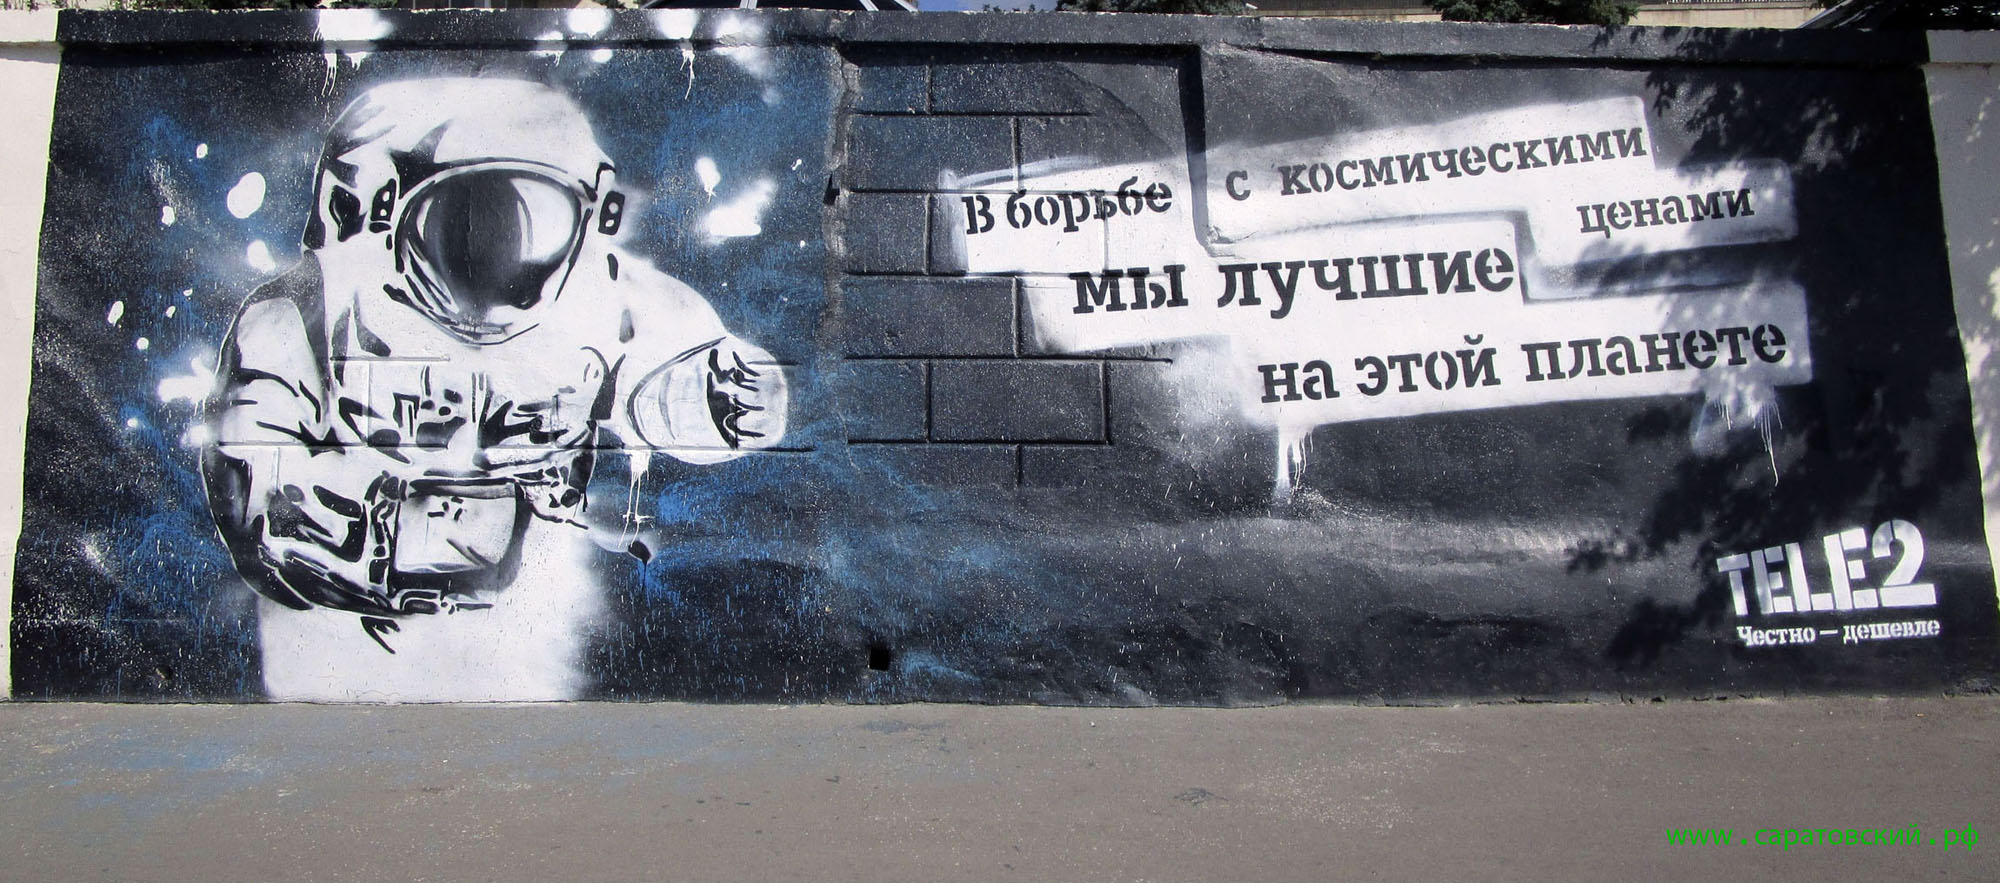 Набережная Саратова, граффити: космическая гонка Саратовской области